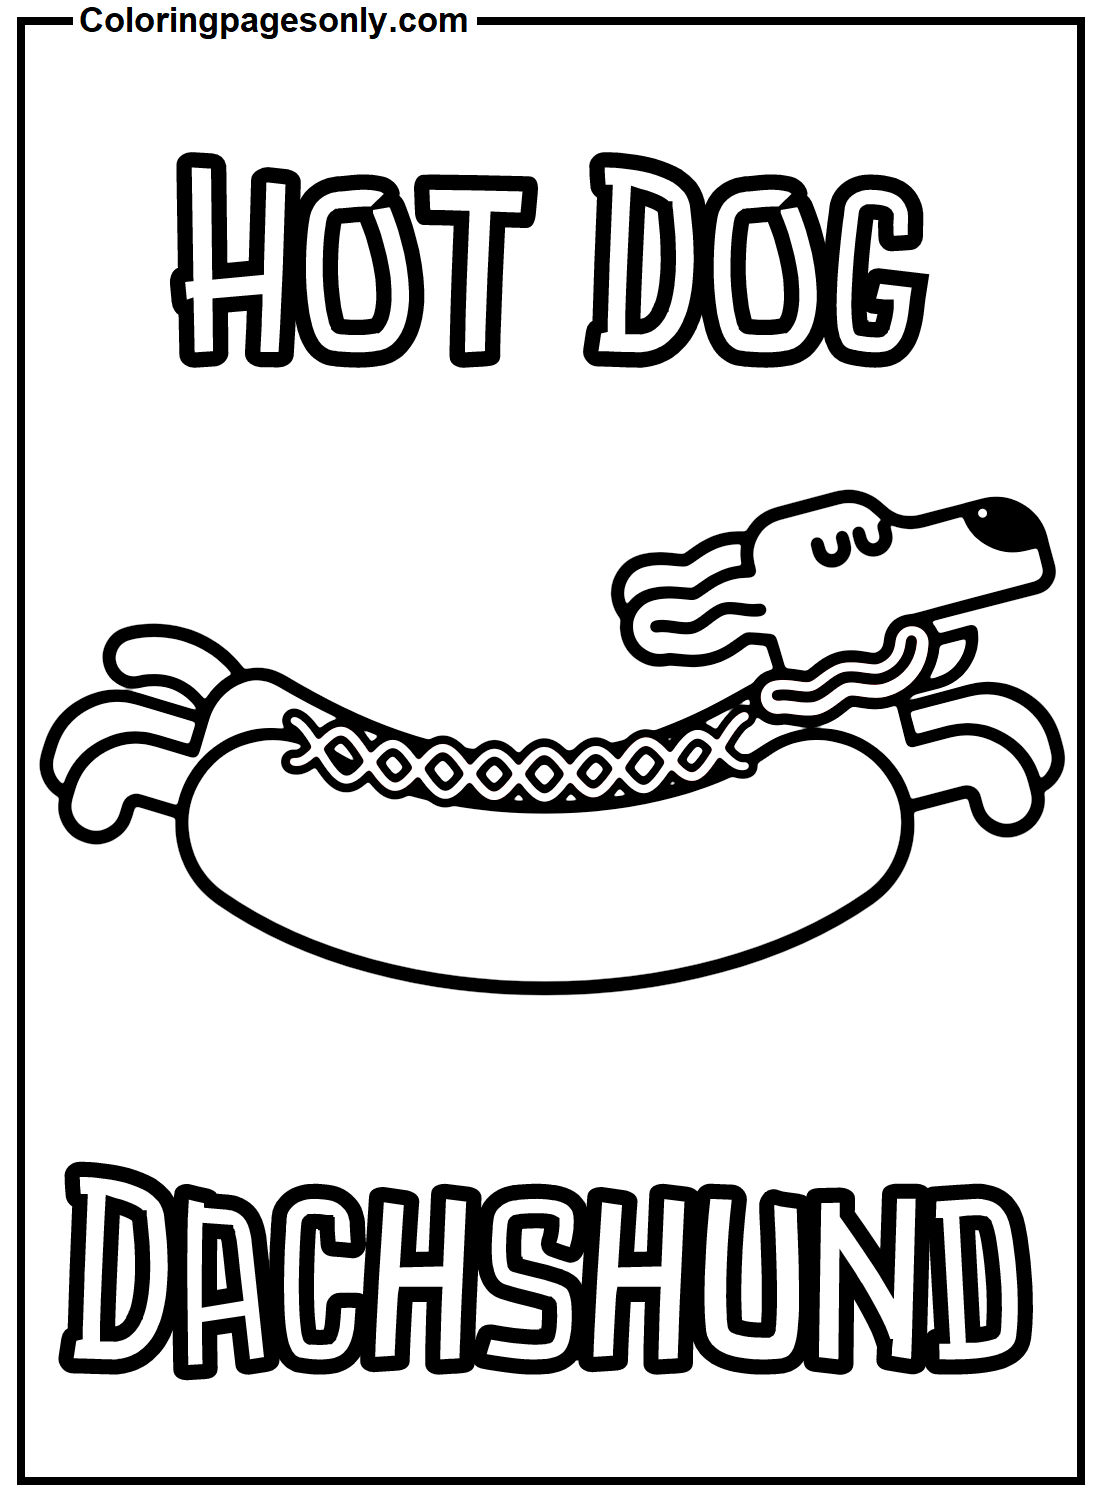 Hotdog Teckel van Hot Dog